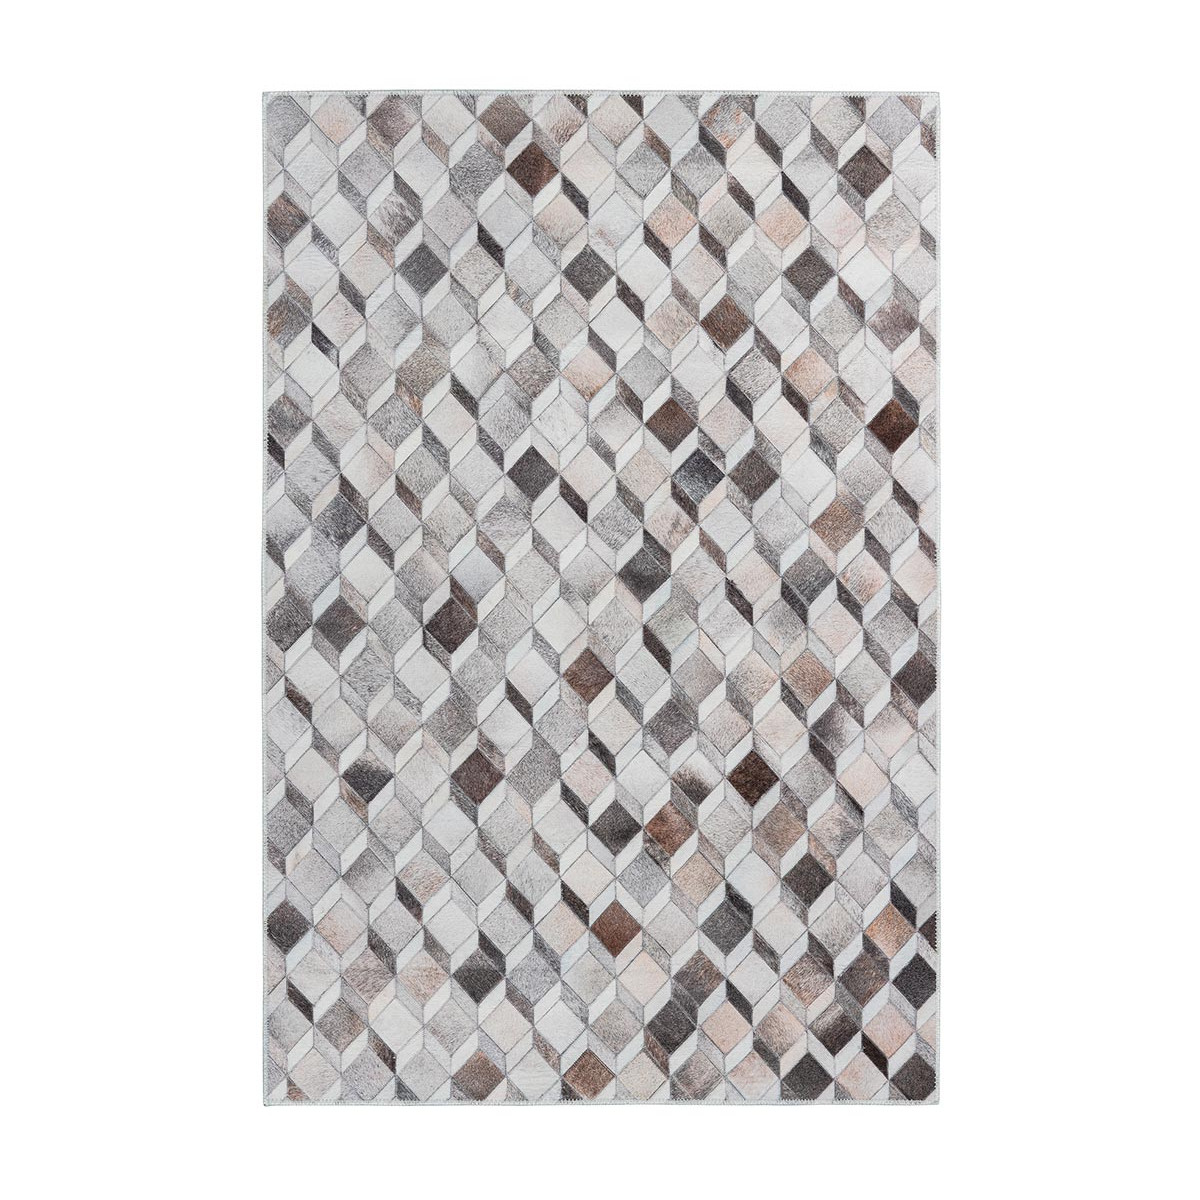 Tapis ethnique patchwork en polyester multicolore 160x230